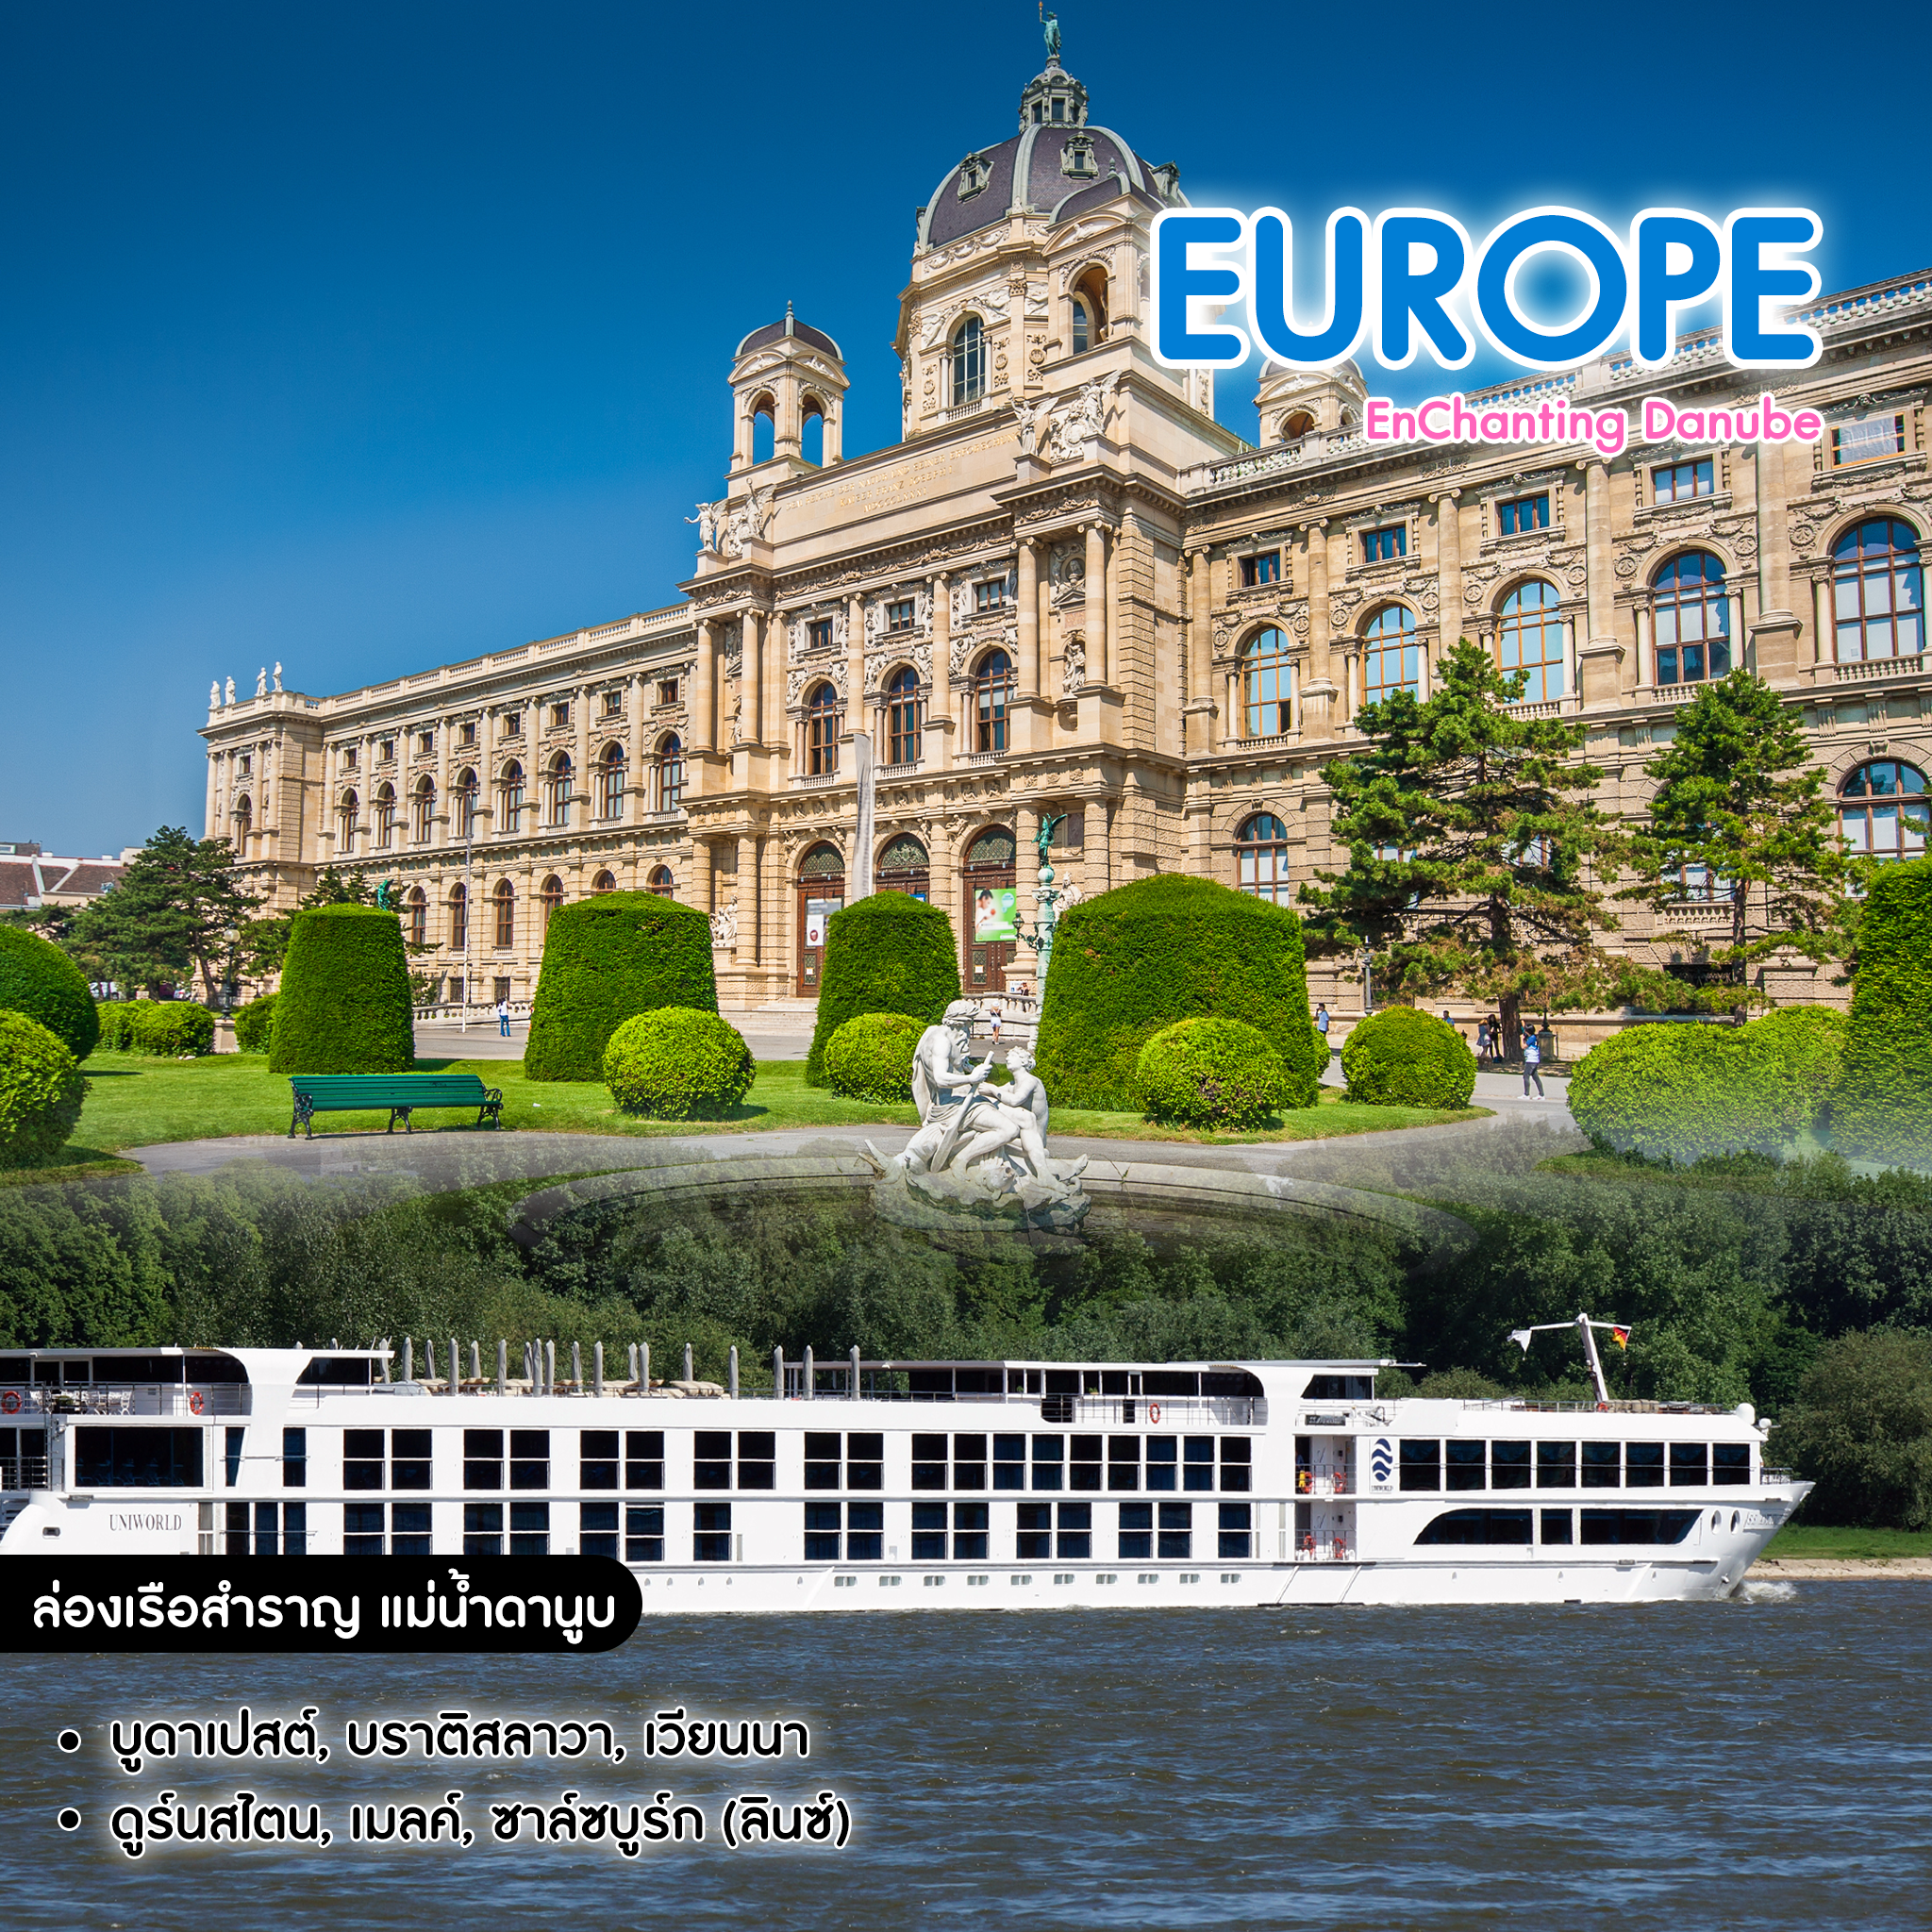 ทัวร์ยุโรป ล่องเรือสำราญ แม่น้ำดานูบ Enchanting Danube